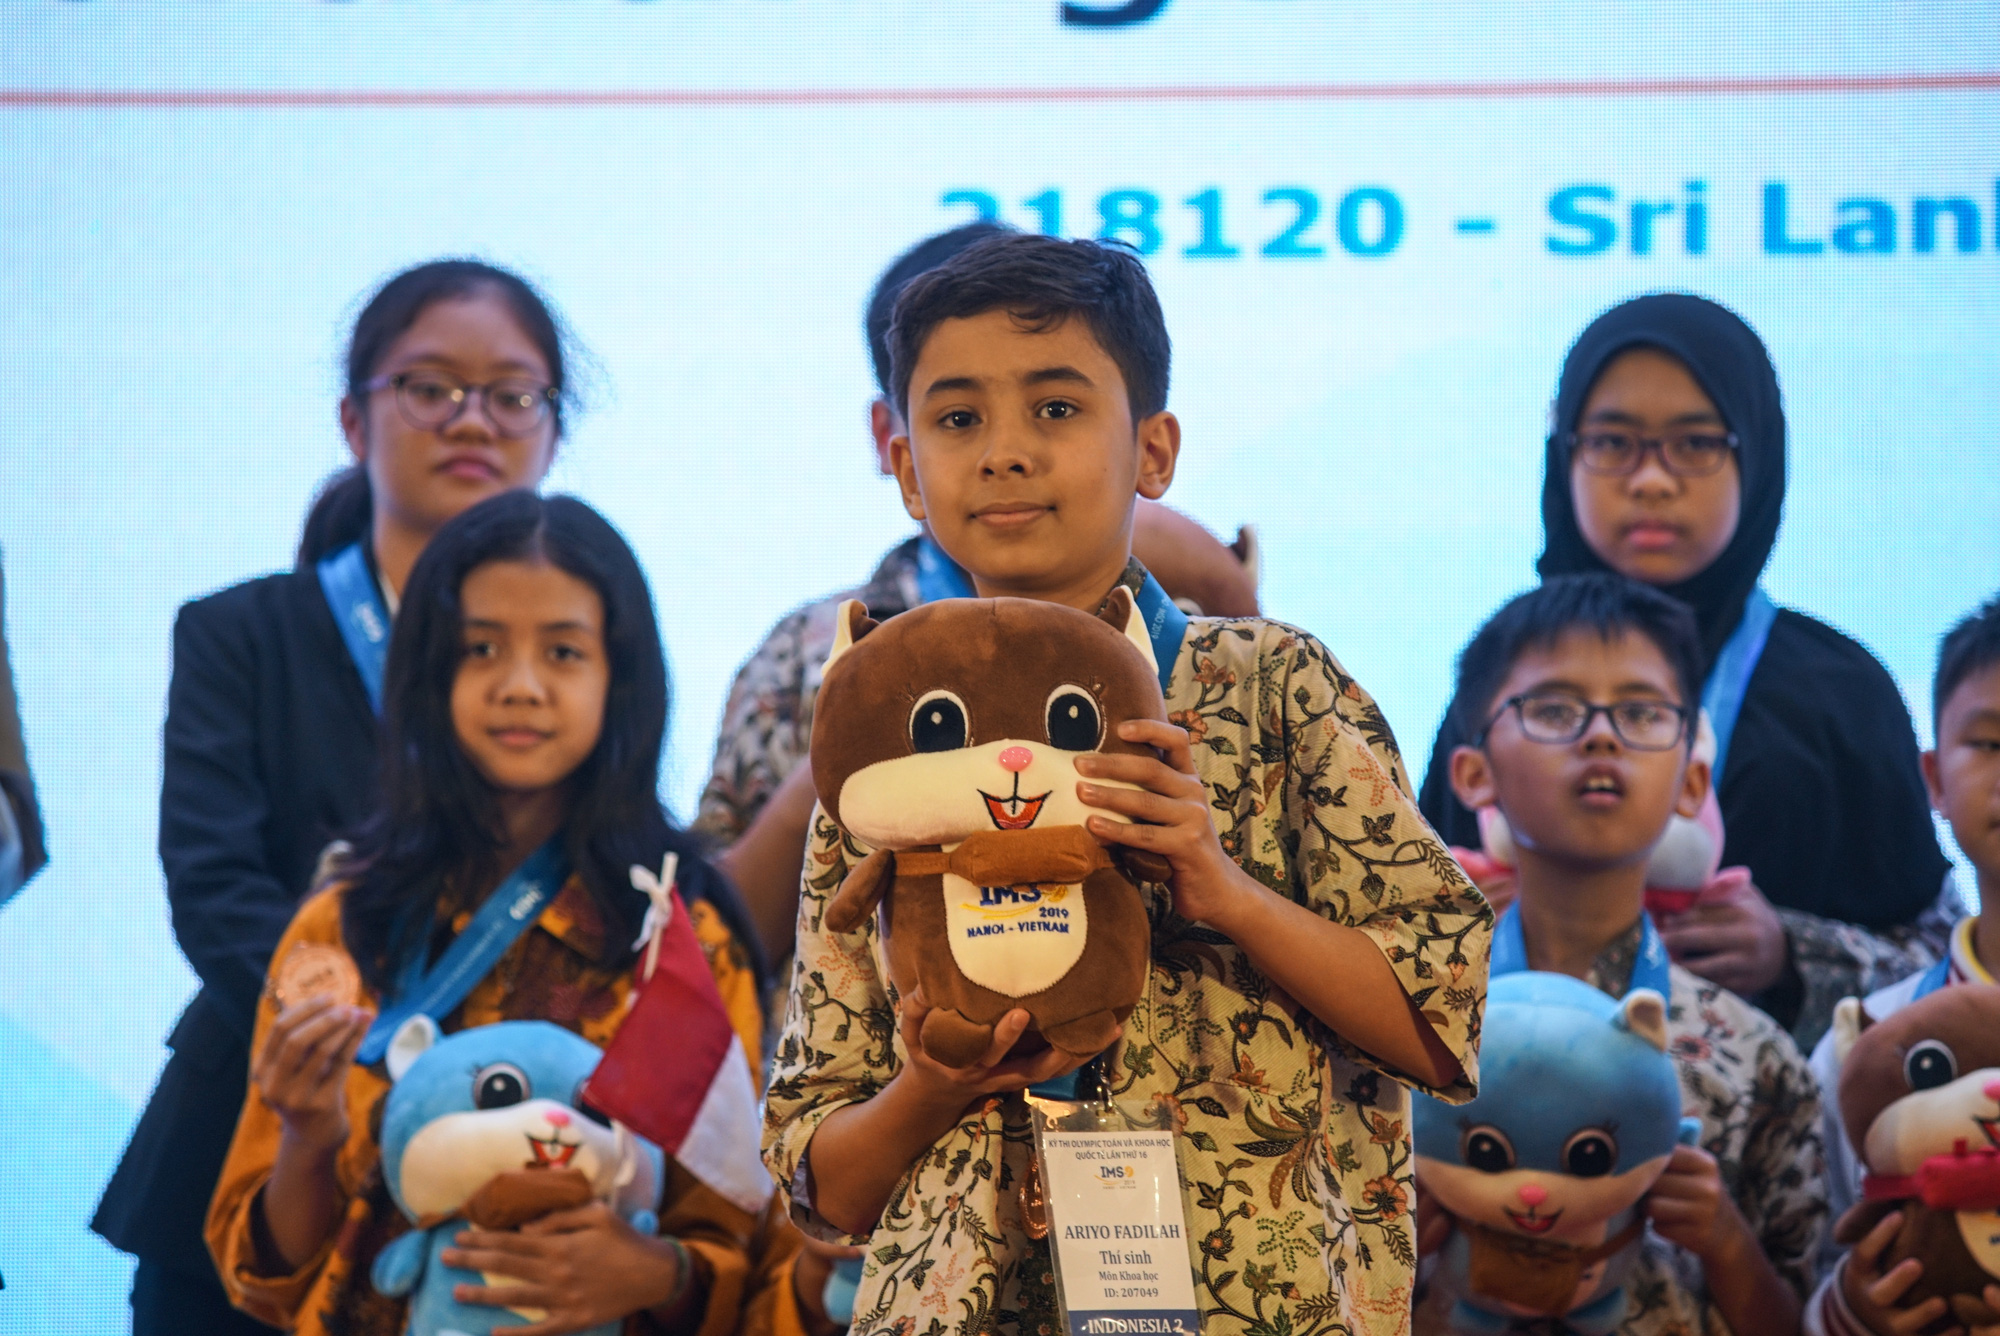 Việt Nam giành 15 HCV tại kỳ thi Olympic toán học và khoa học quốc tế 2019 - Ảnh 4.